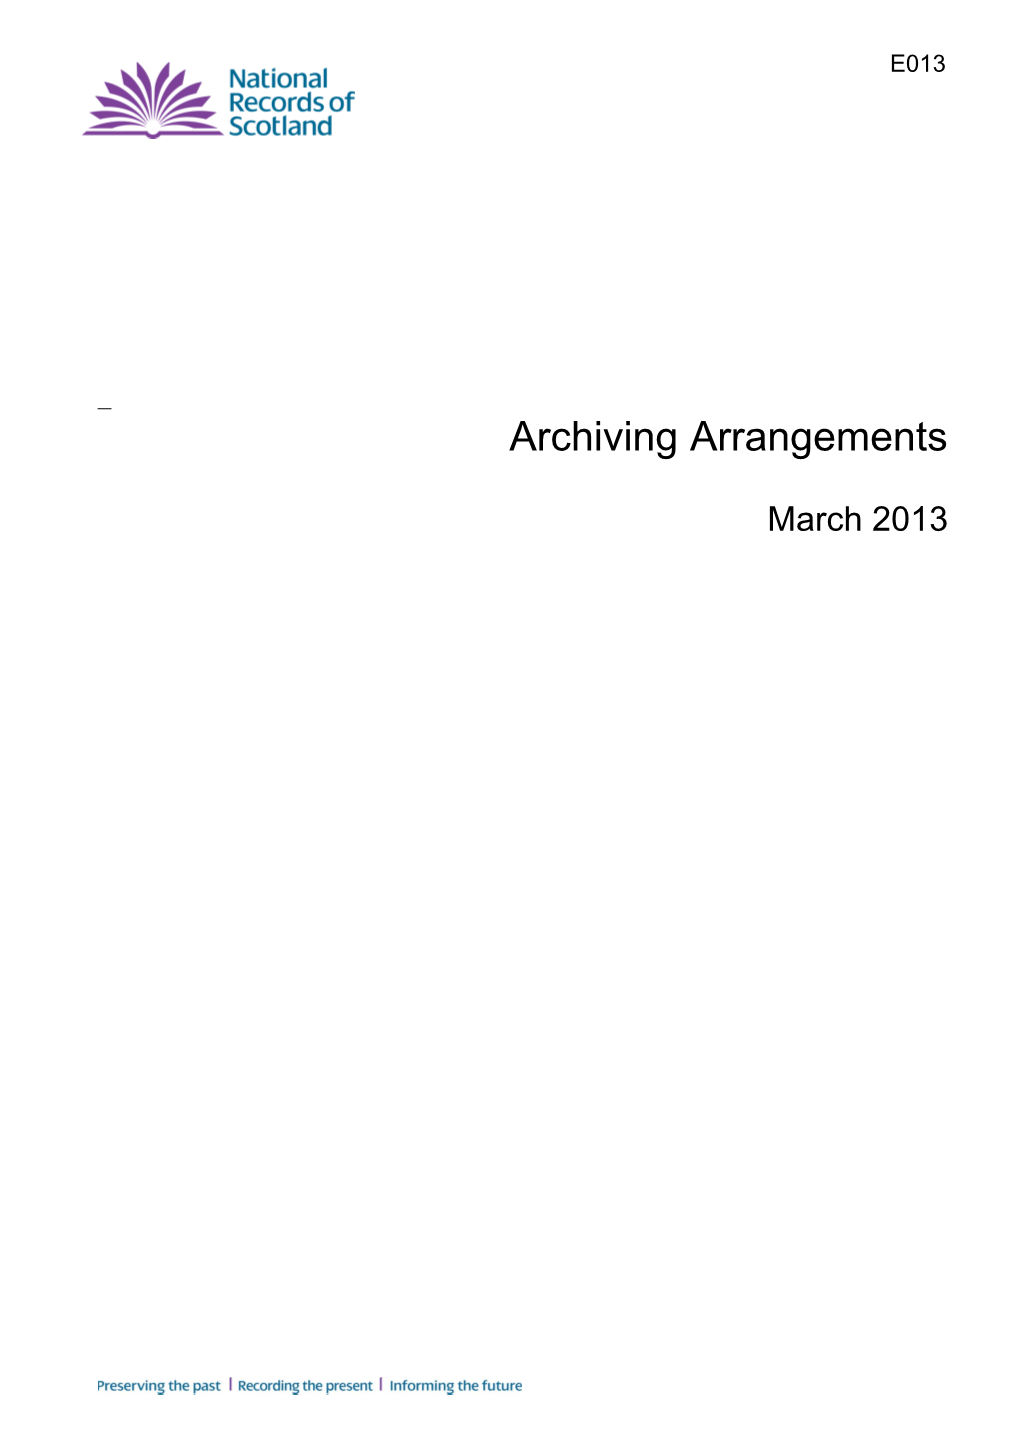 NRS Draft Archiving Arrangements